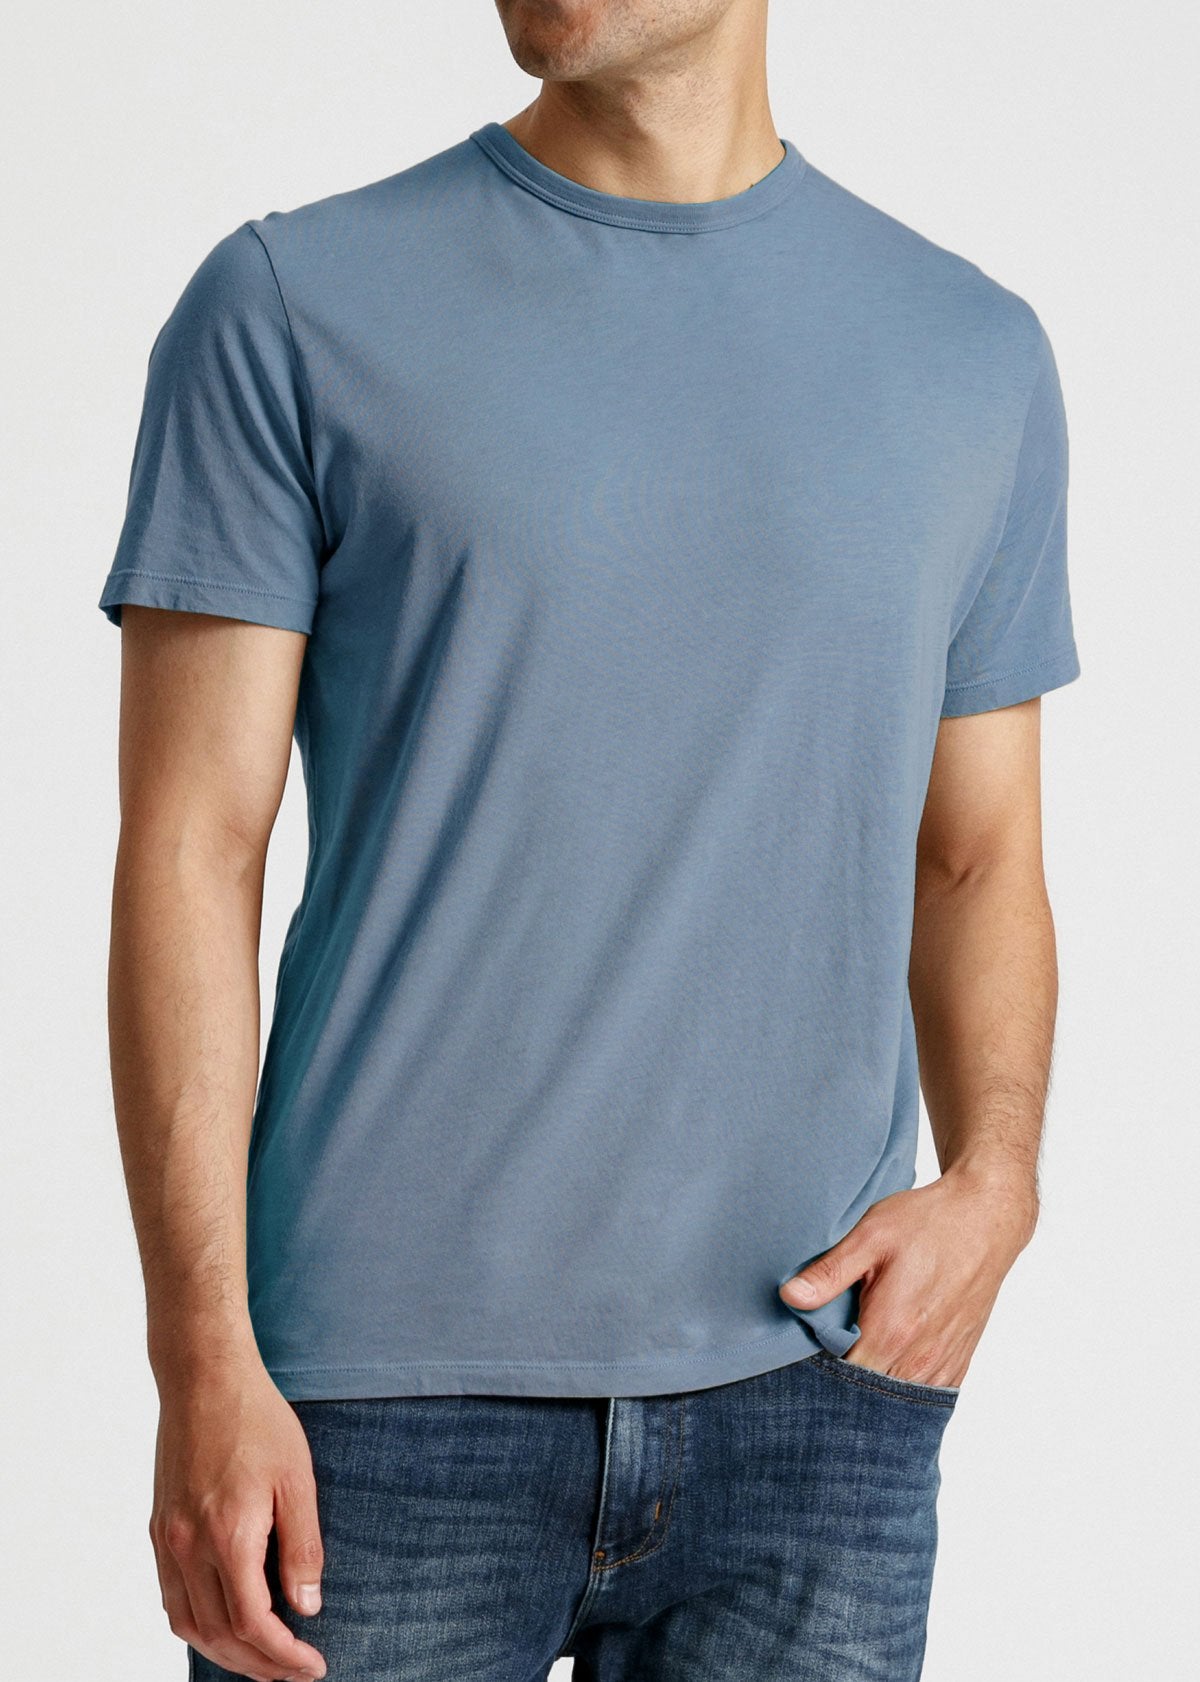 mens soft lightweight t shirt light blue front